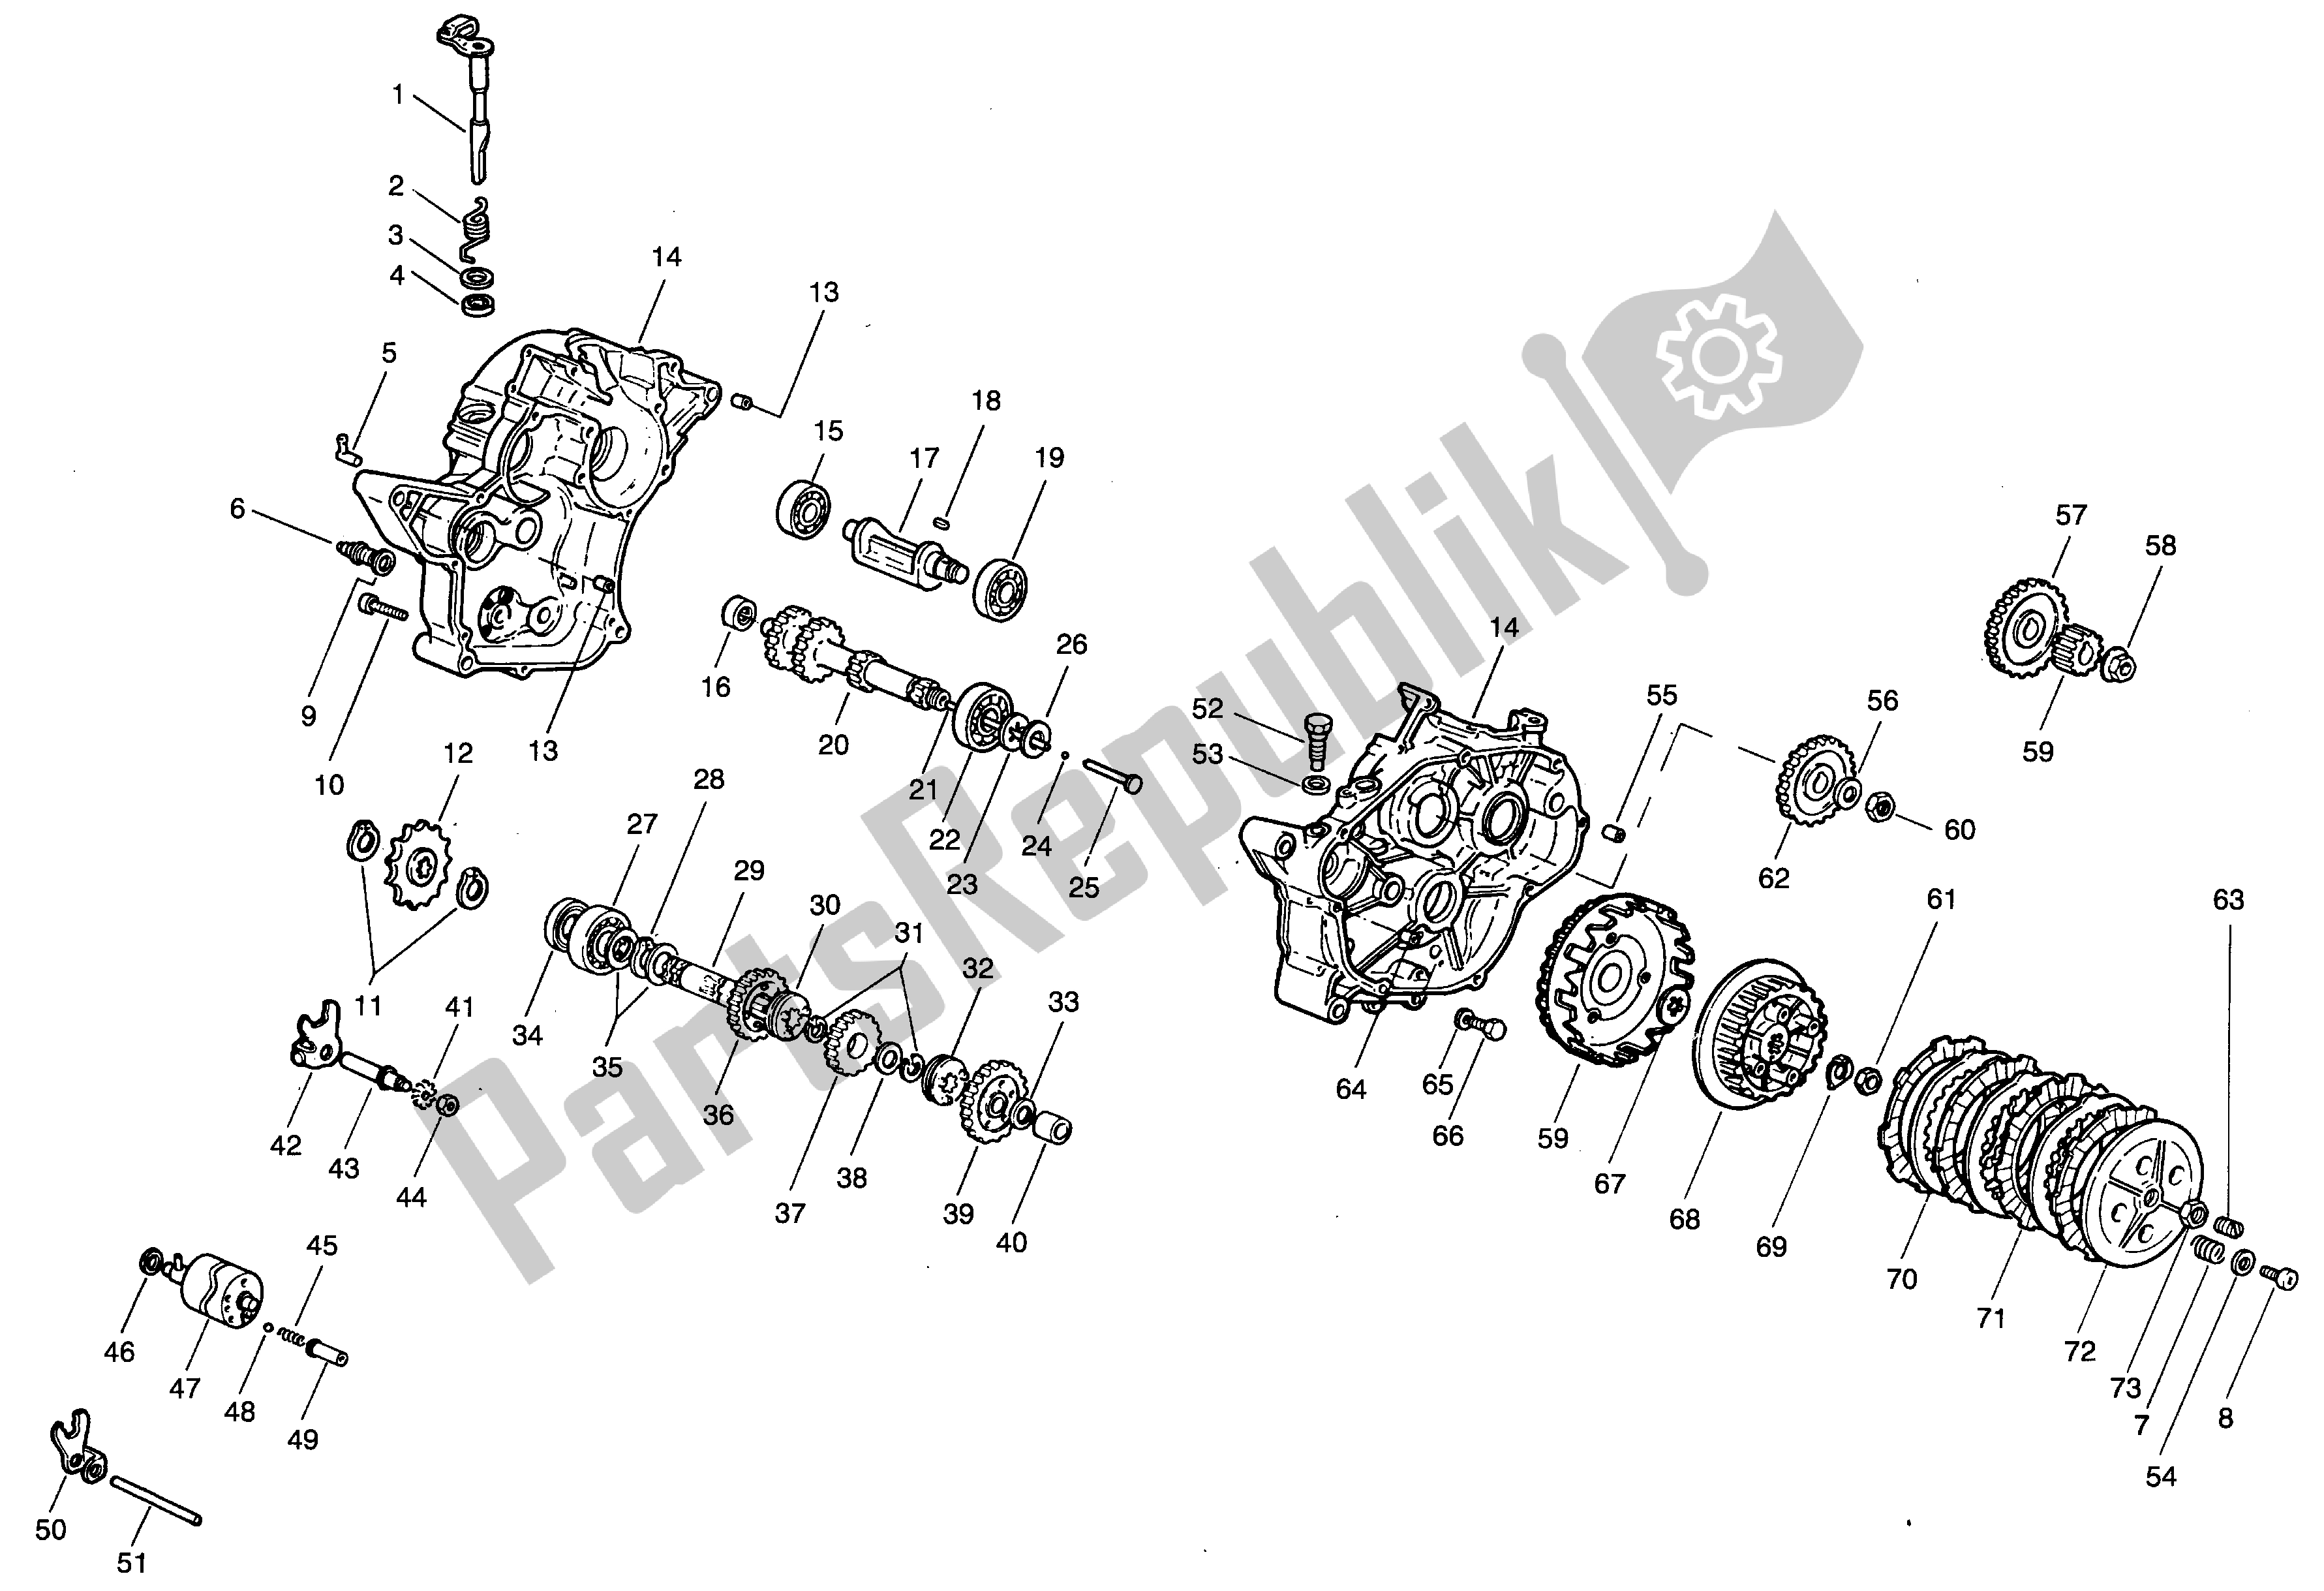 All parts for the Crankcase - Clutch - Trasmission of the Aprilia Minarelli 50 1991 - 2000